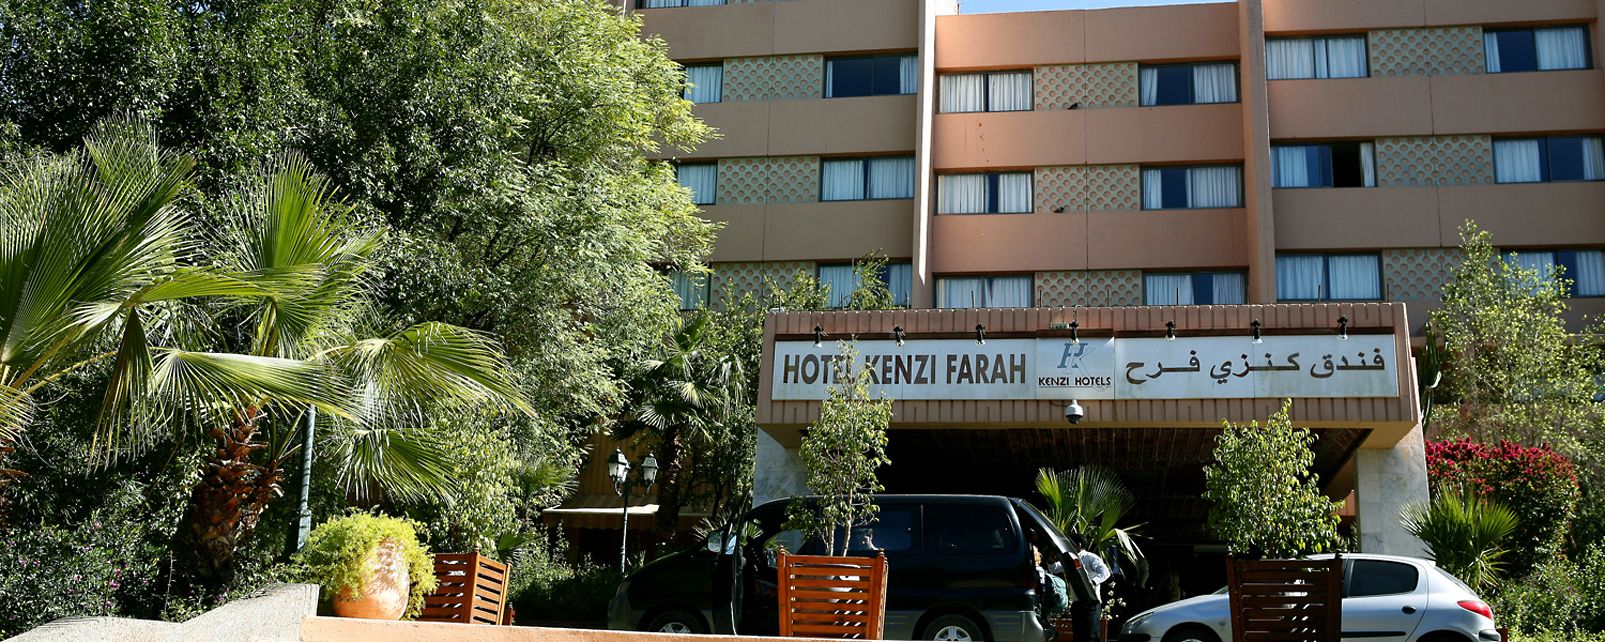 Hotel Kenzi Farah